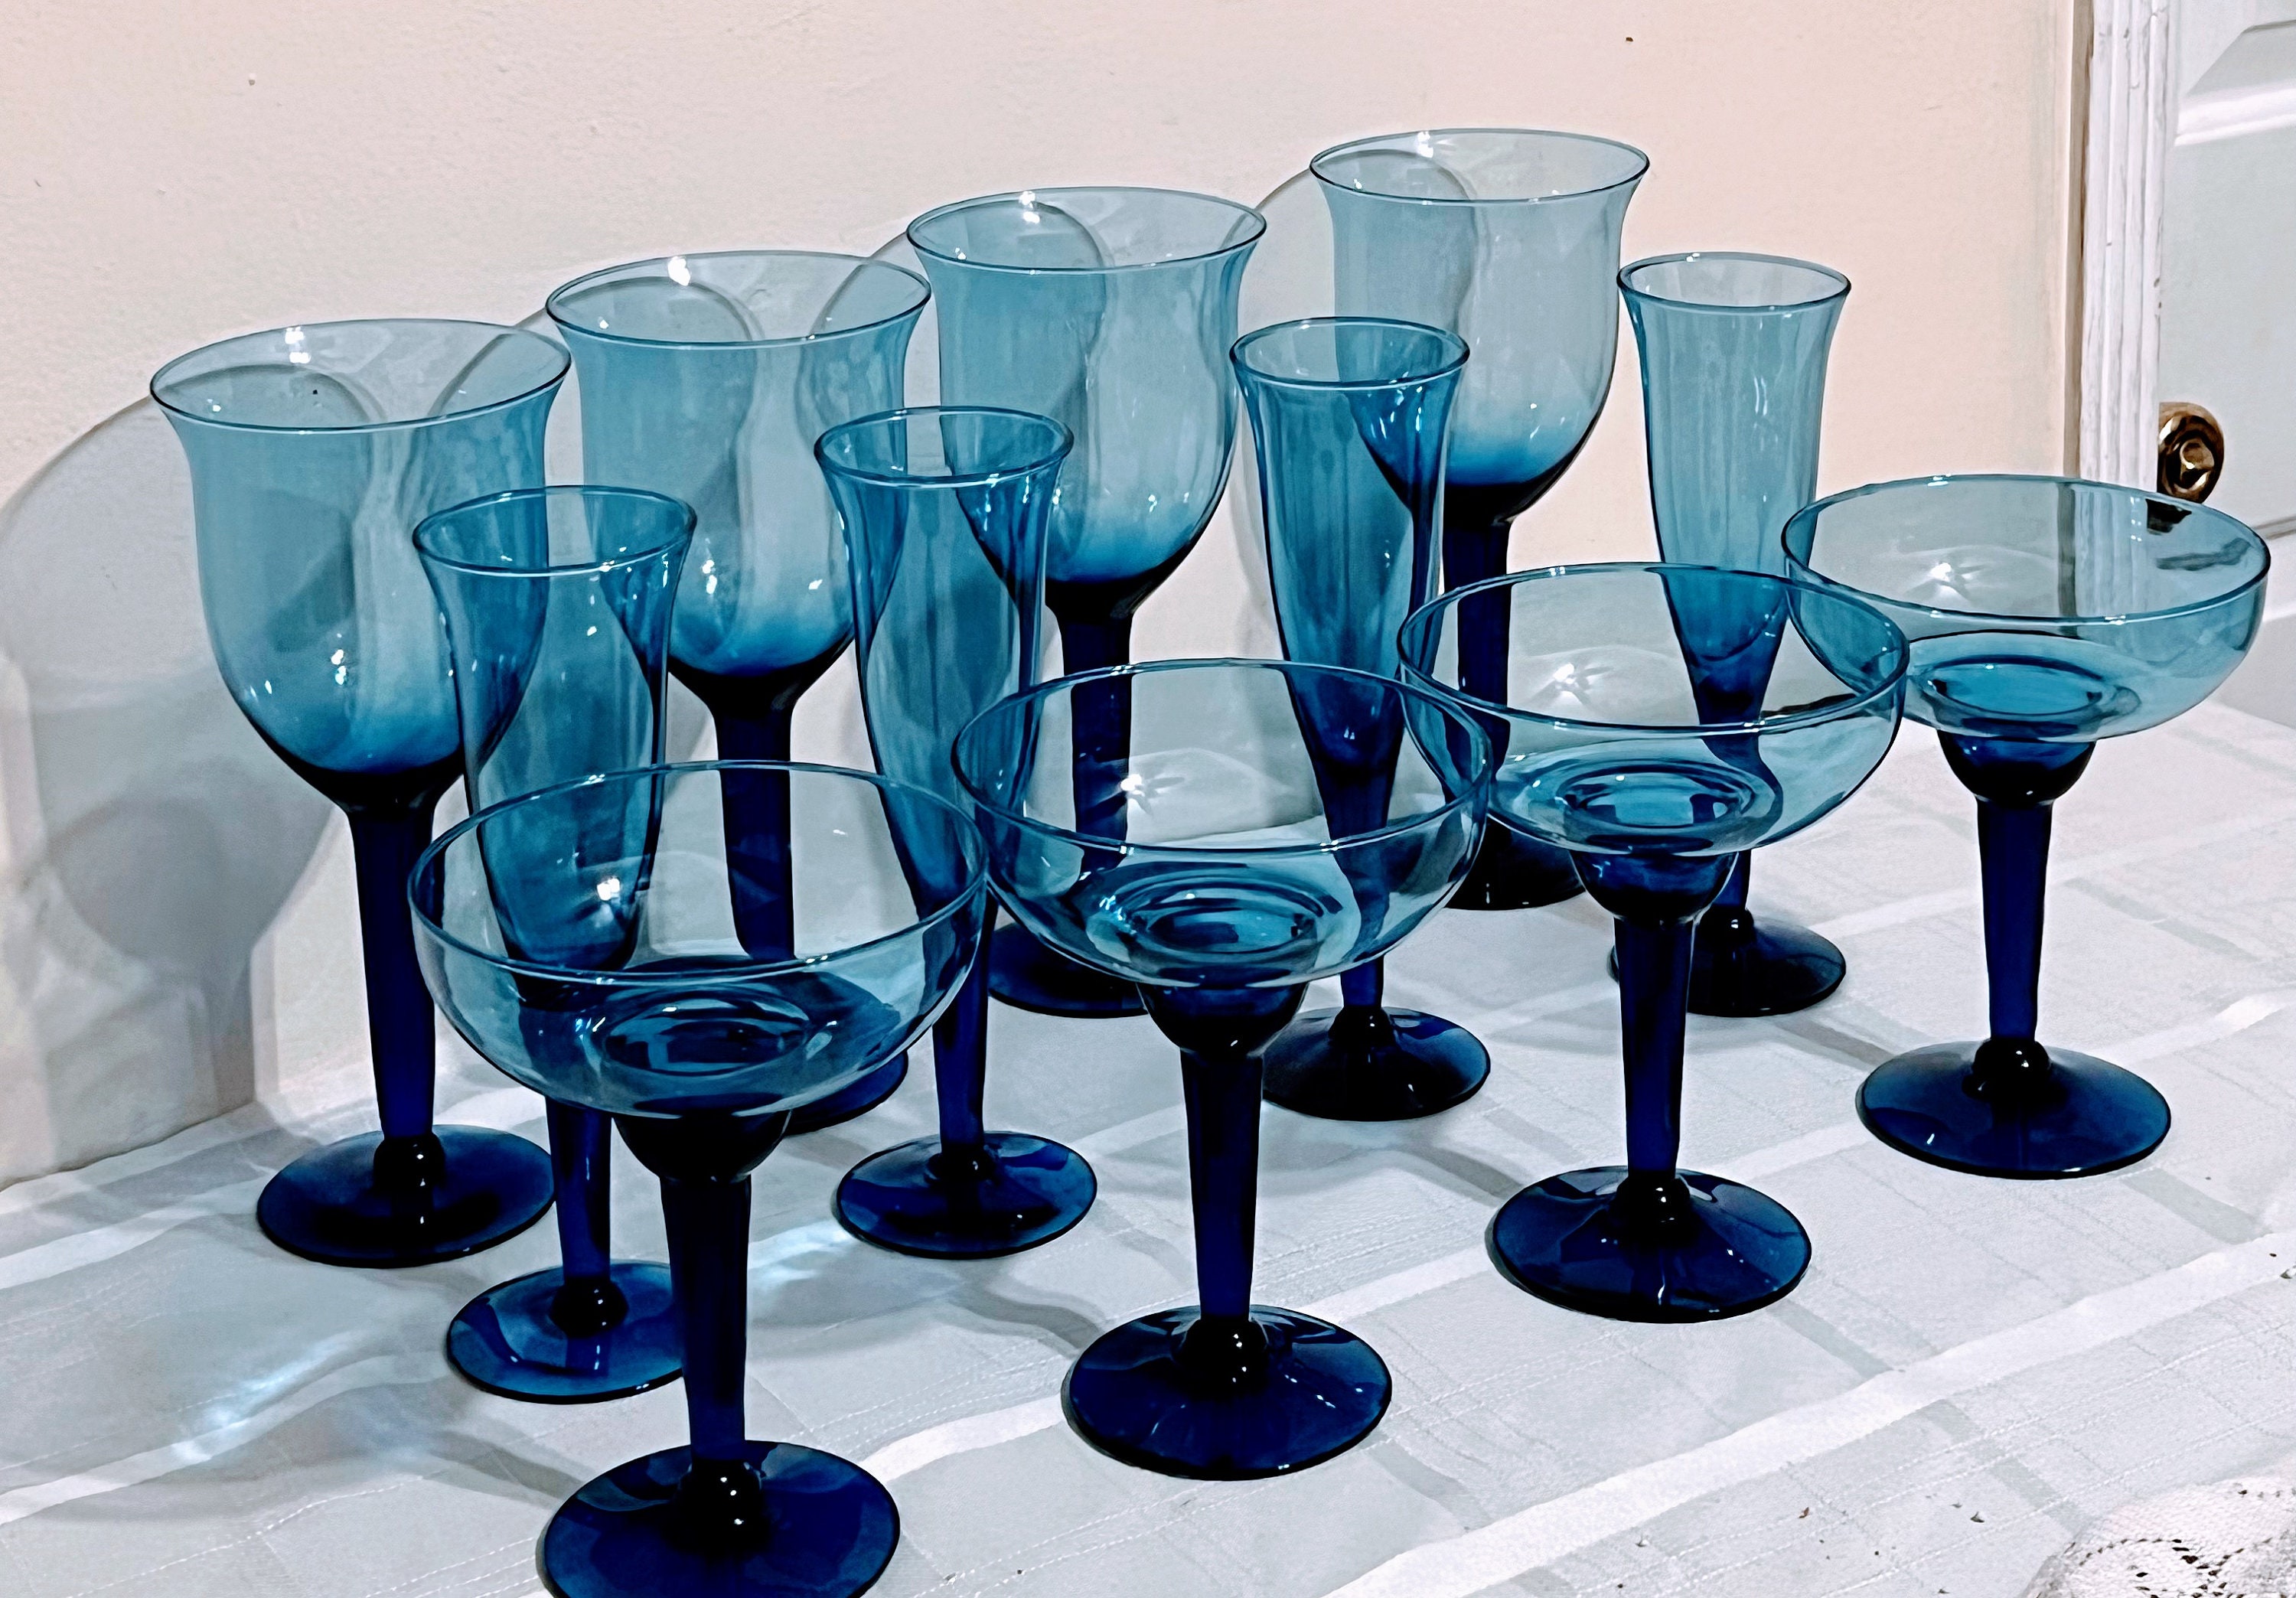 Vintage, vetro blu, set di 7, bicchieri da vino con motivo a uva inciso,  squisito, soffiato a mano, delicato, alto, raro, bicchieri da vino blu -   Italia